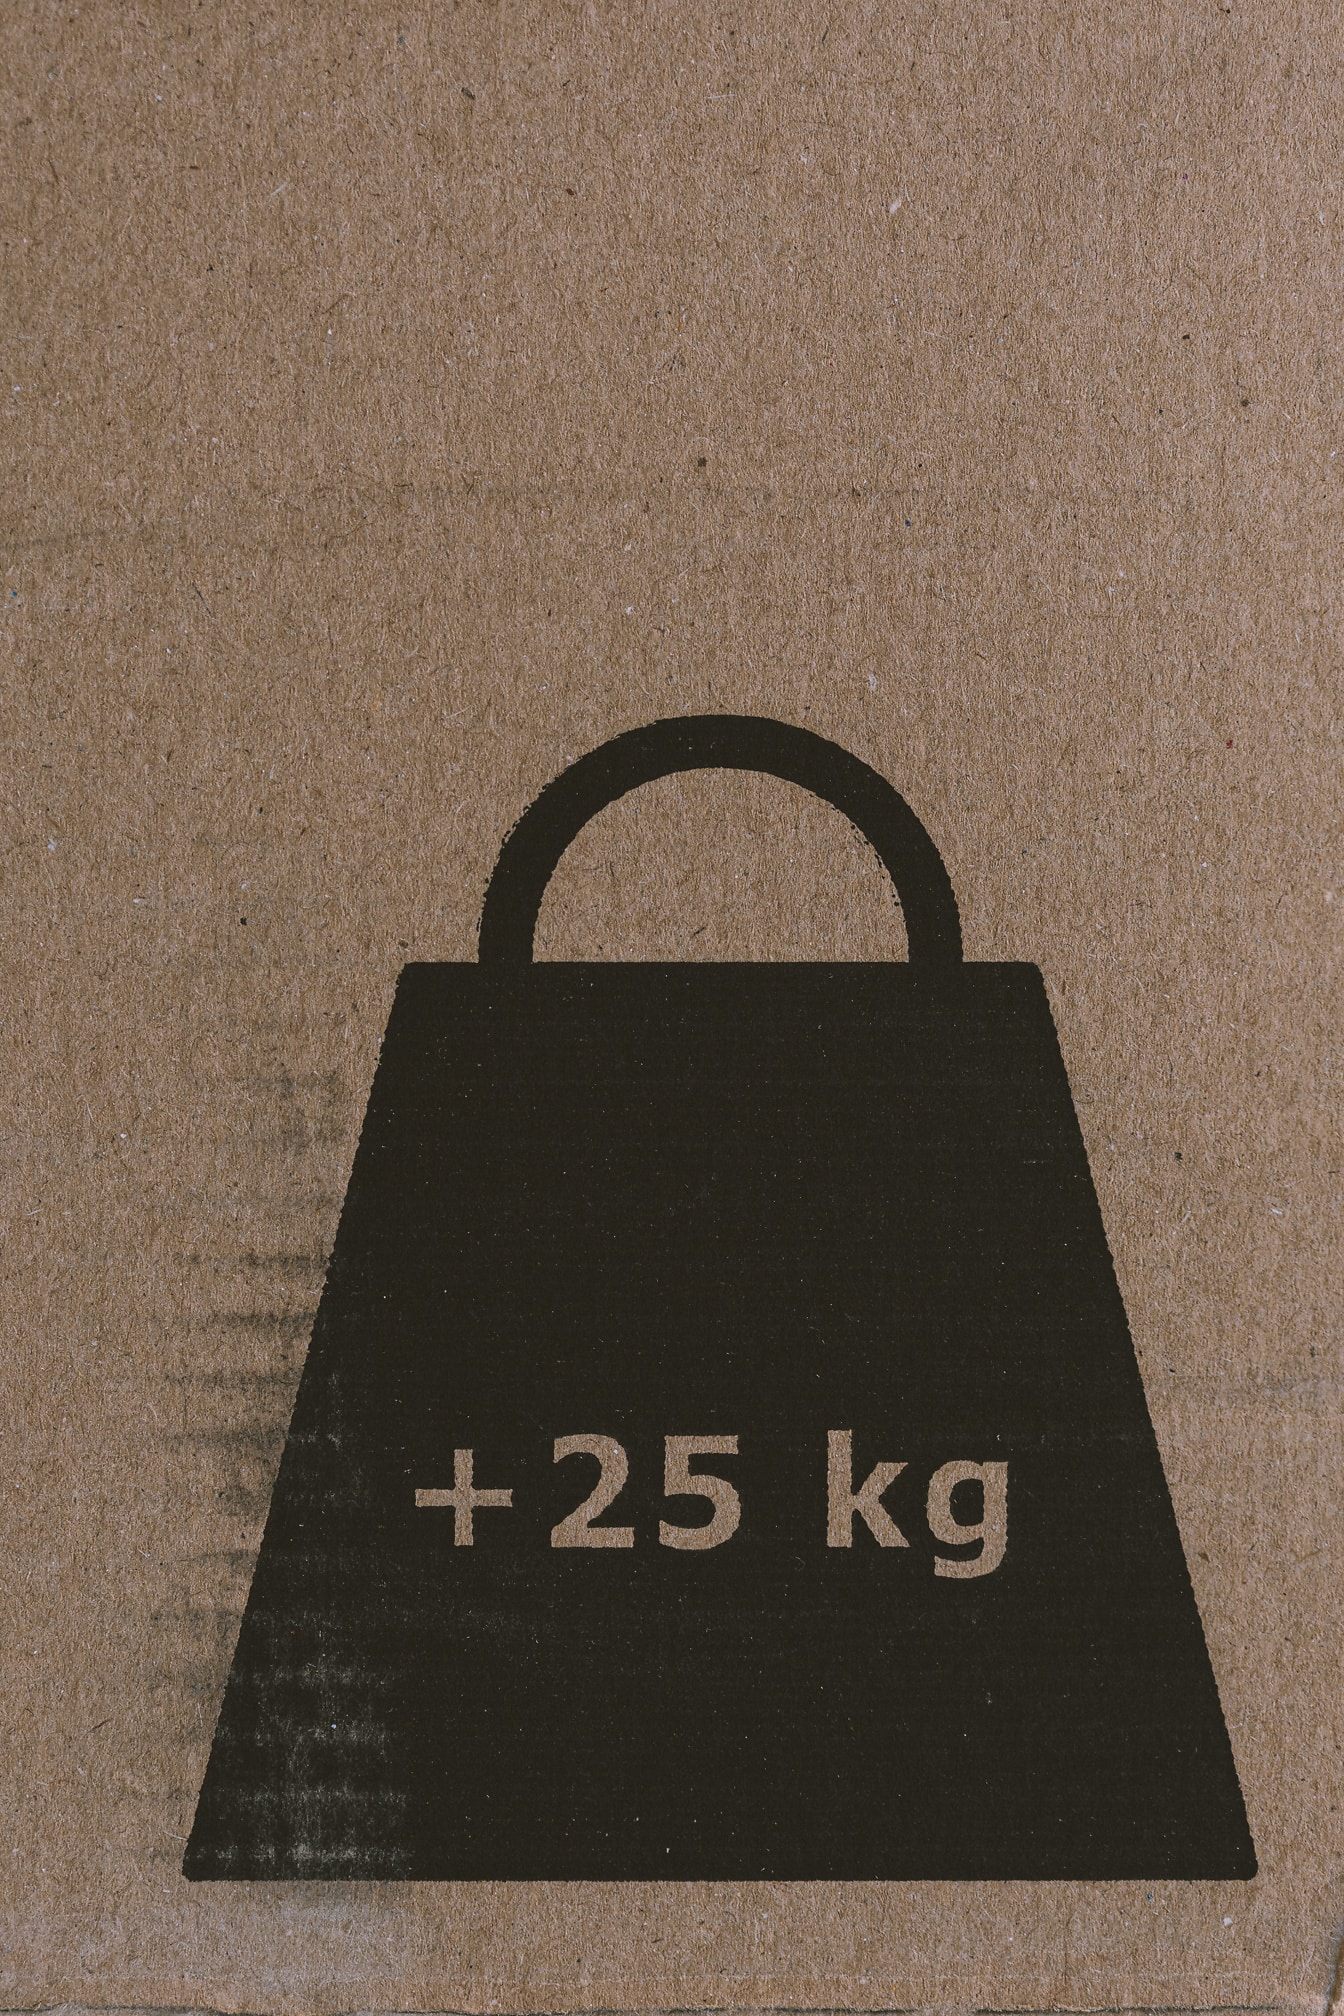 Merkki kilogramman painosta (25 kg) ruskealla pahvilla